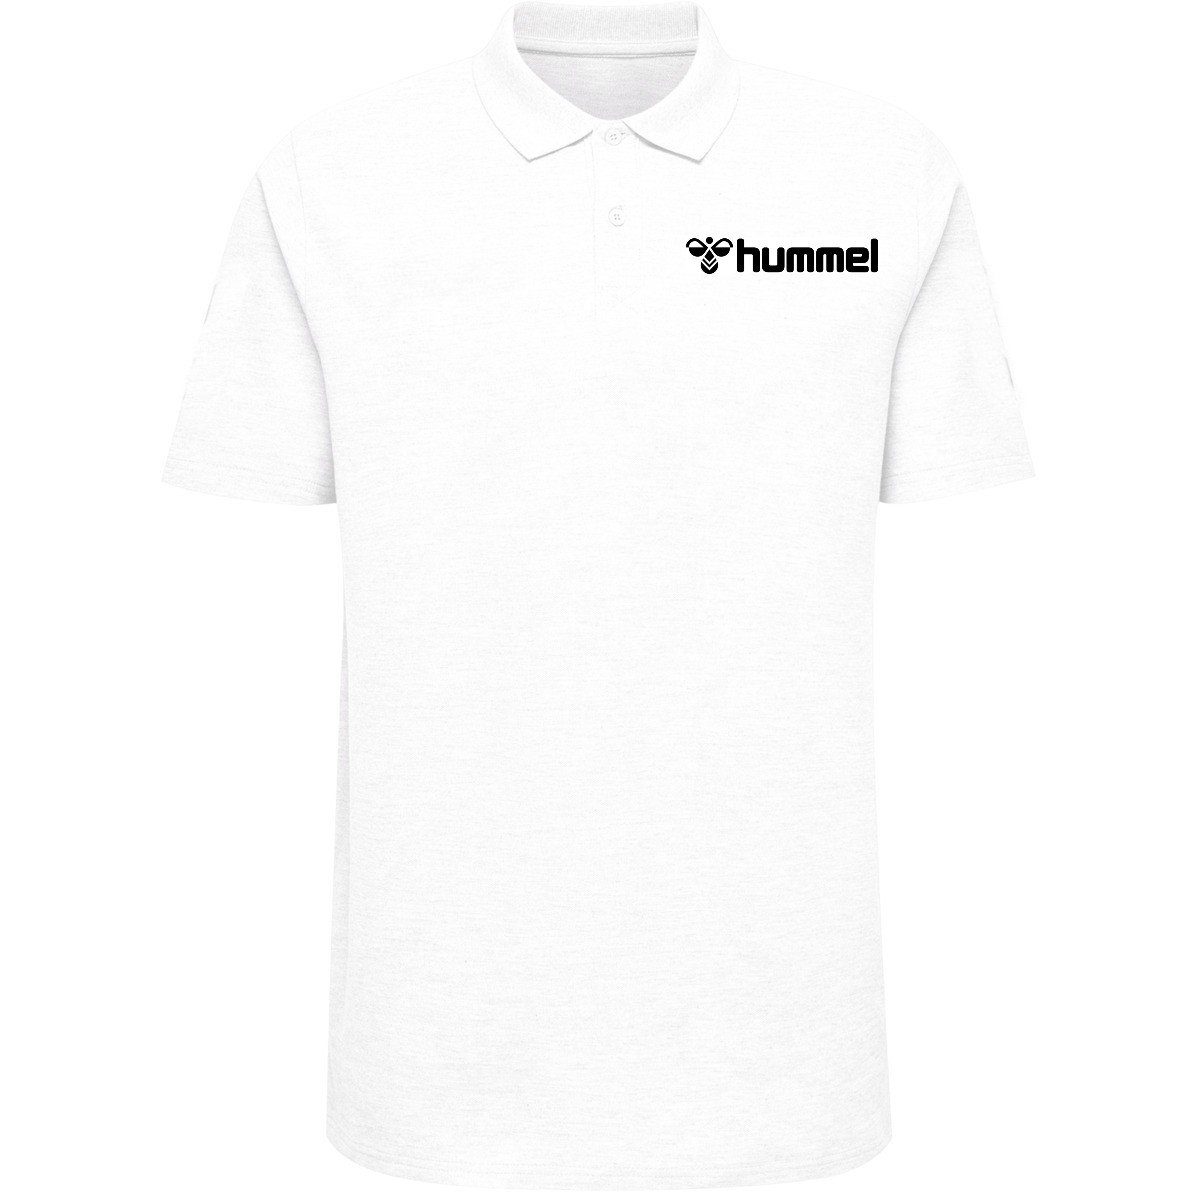 Kinder White Poloshirts 9001 - HMLGOMover POLO T-Shirt hummel COTTON